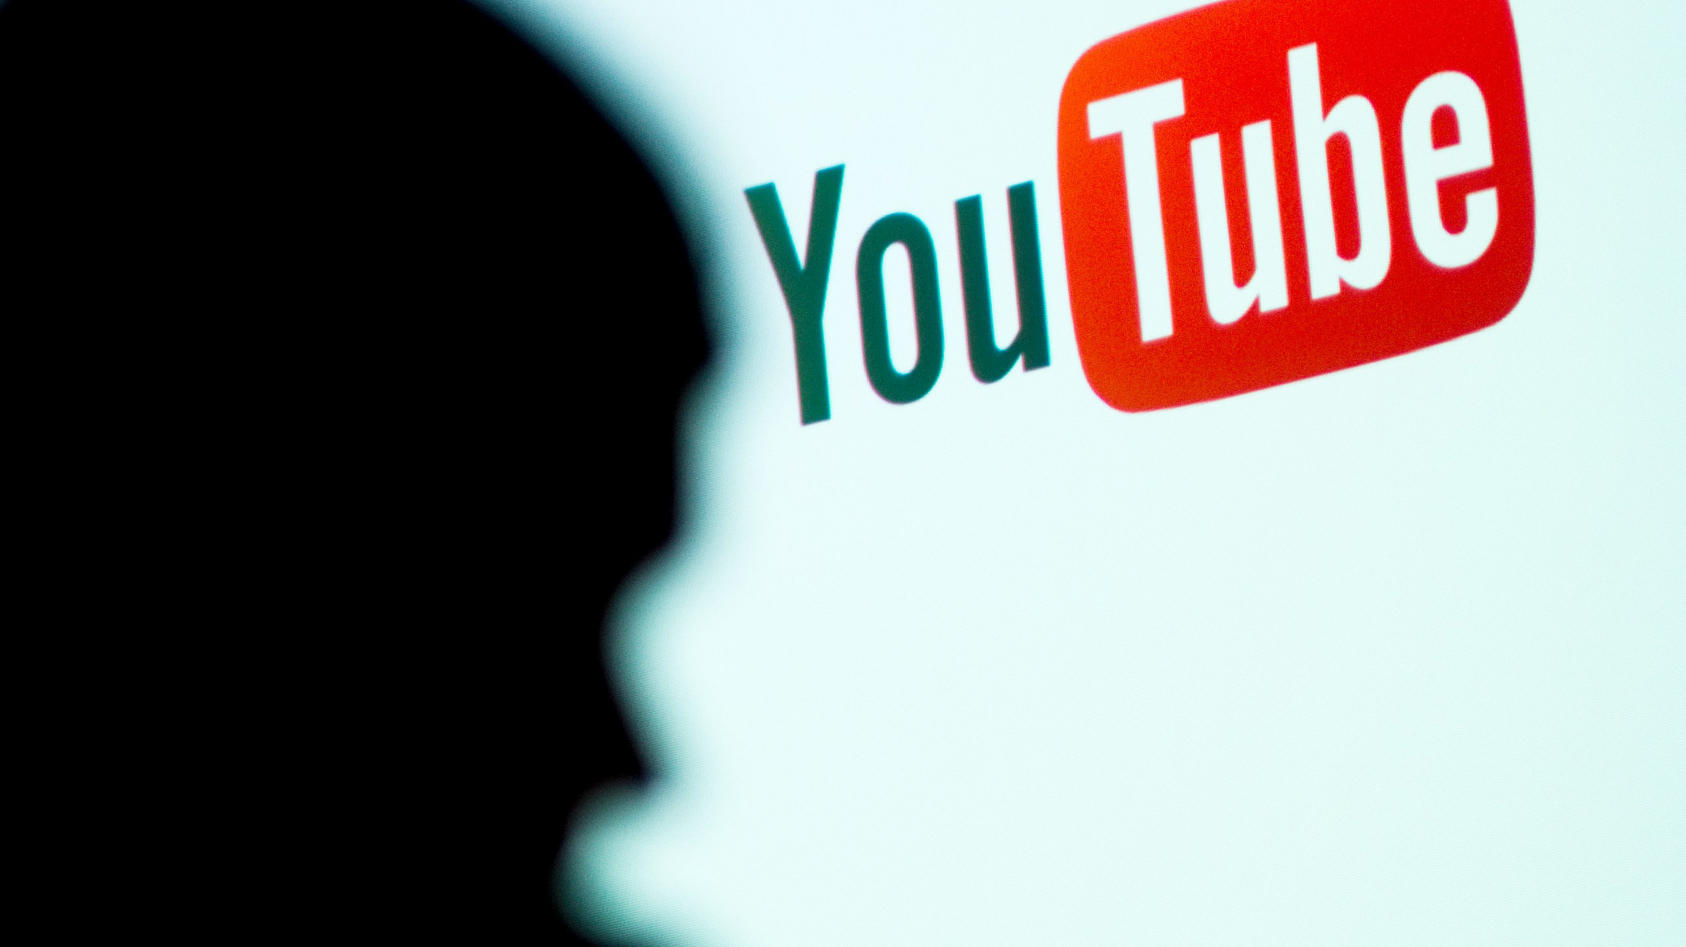 Macht Youtube es Pädophilen zu leicht? Youtuber "MattsWhatItIs" erhebt schwere Vorwürfe.